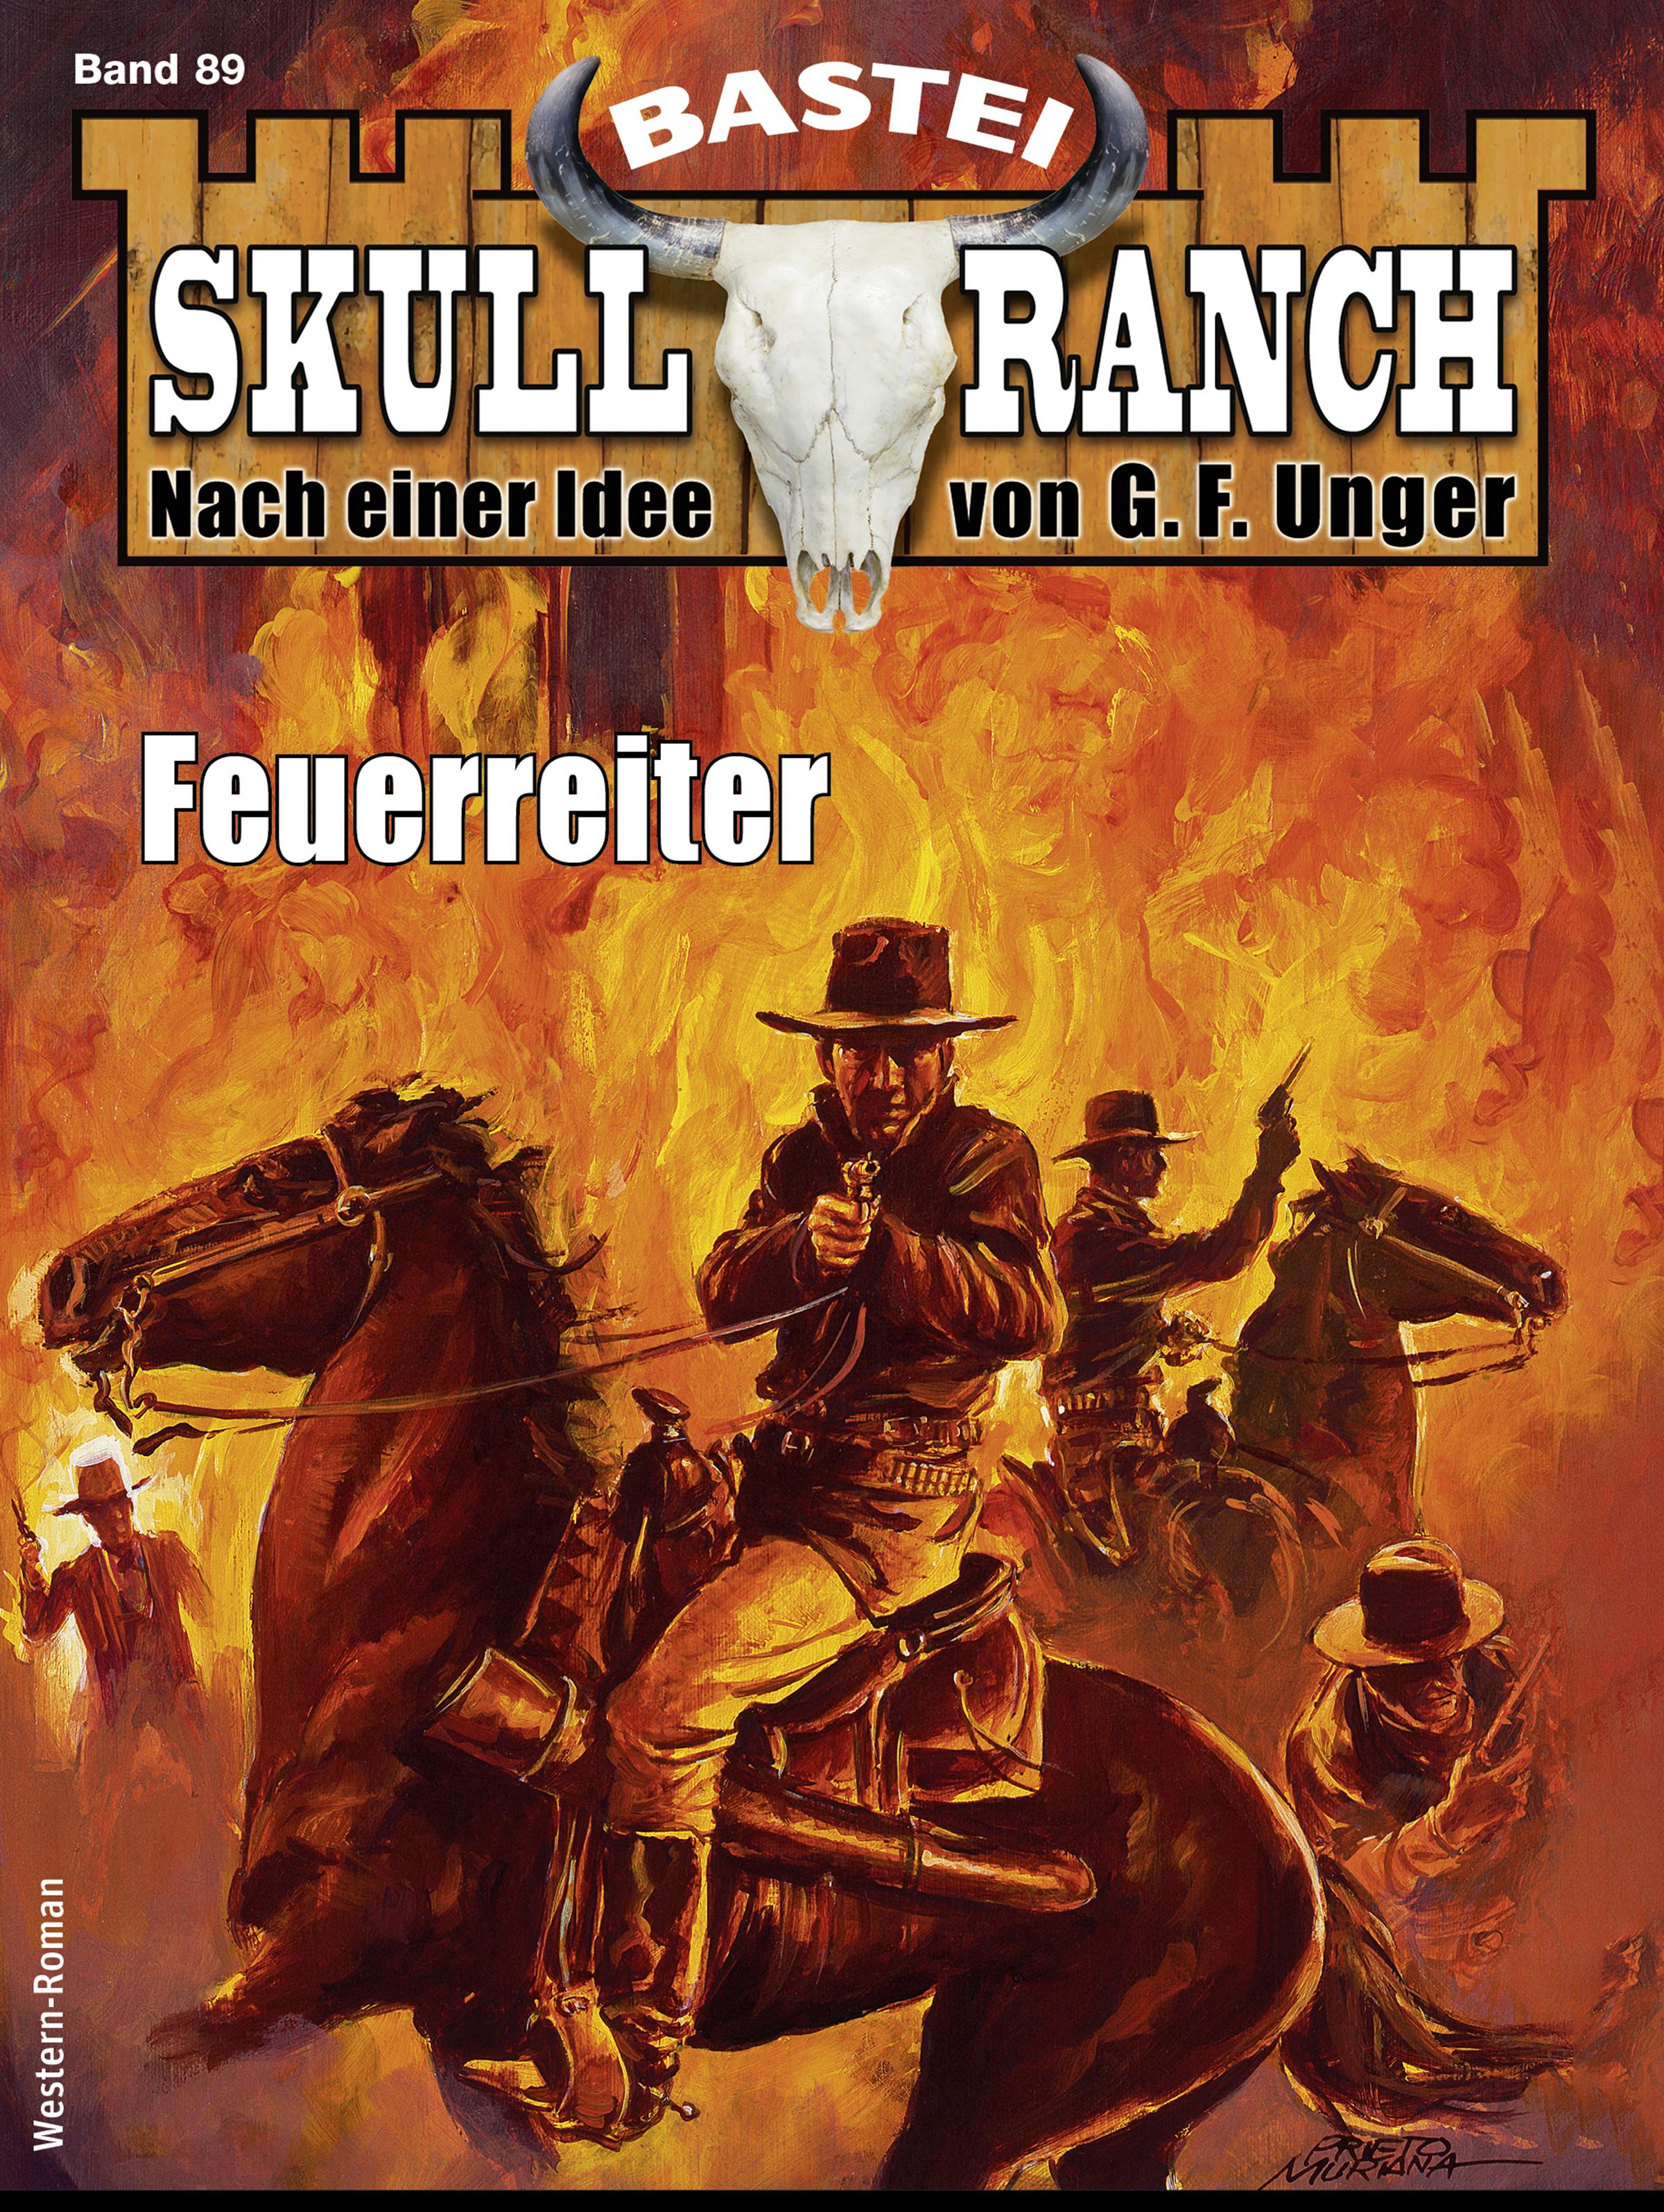 Skull-Ranch